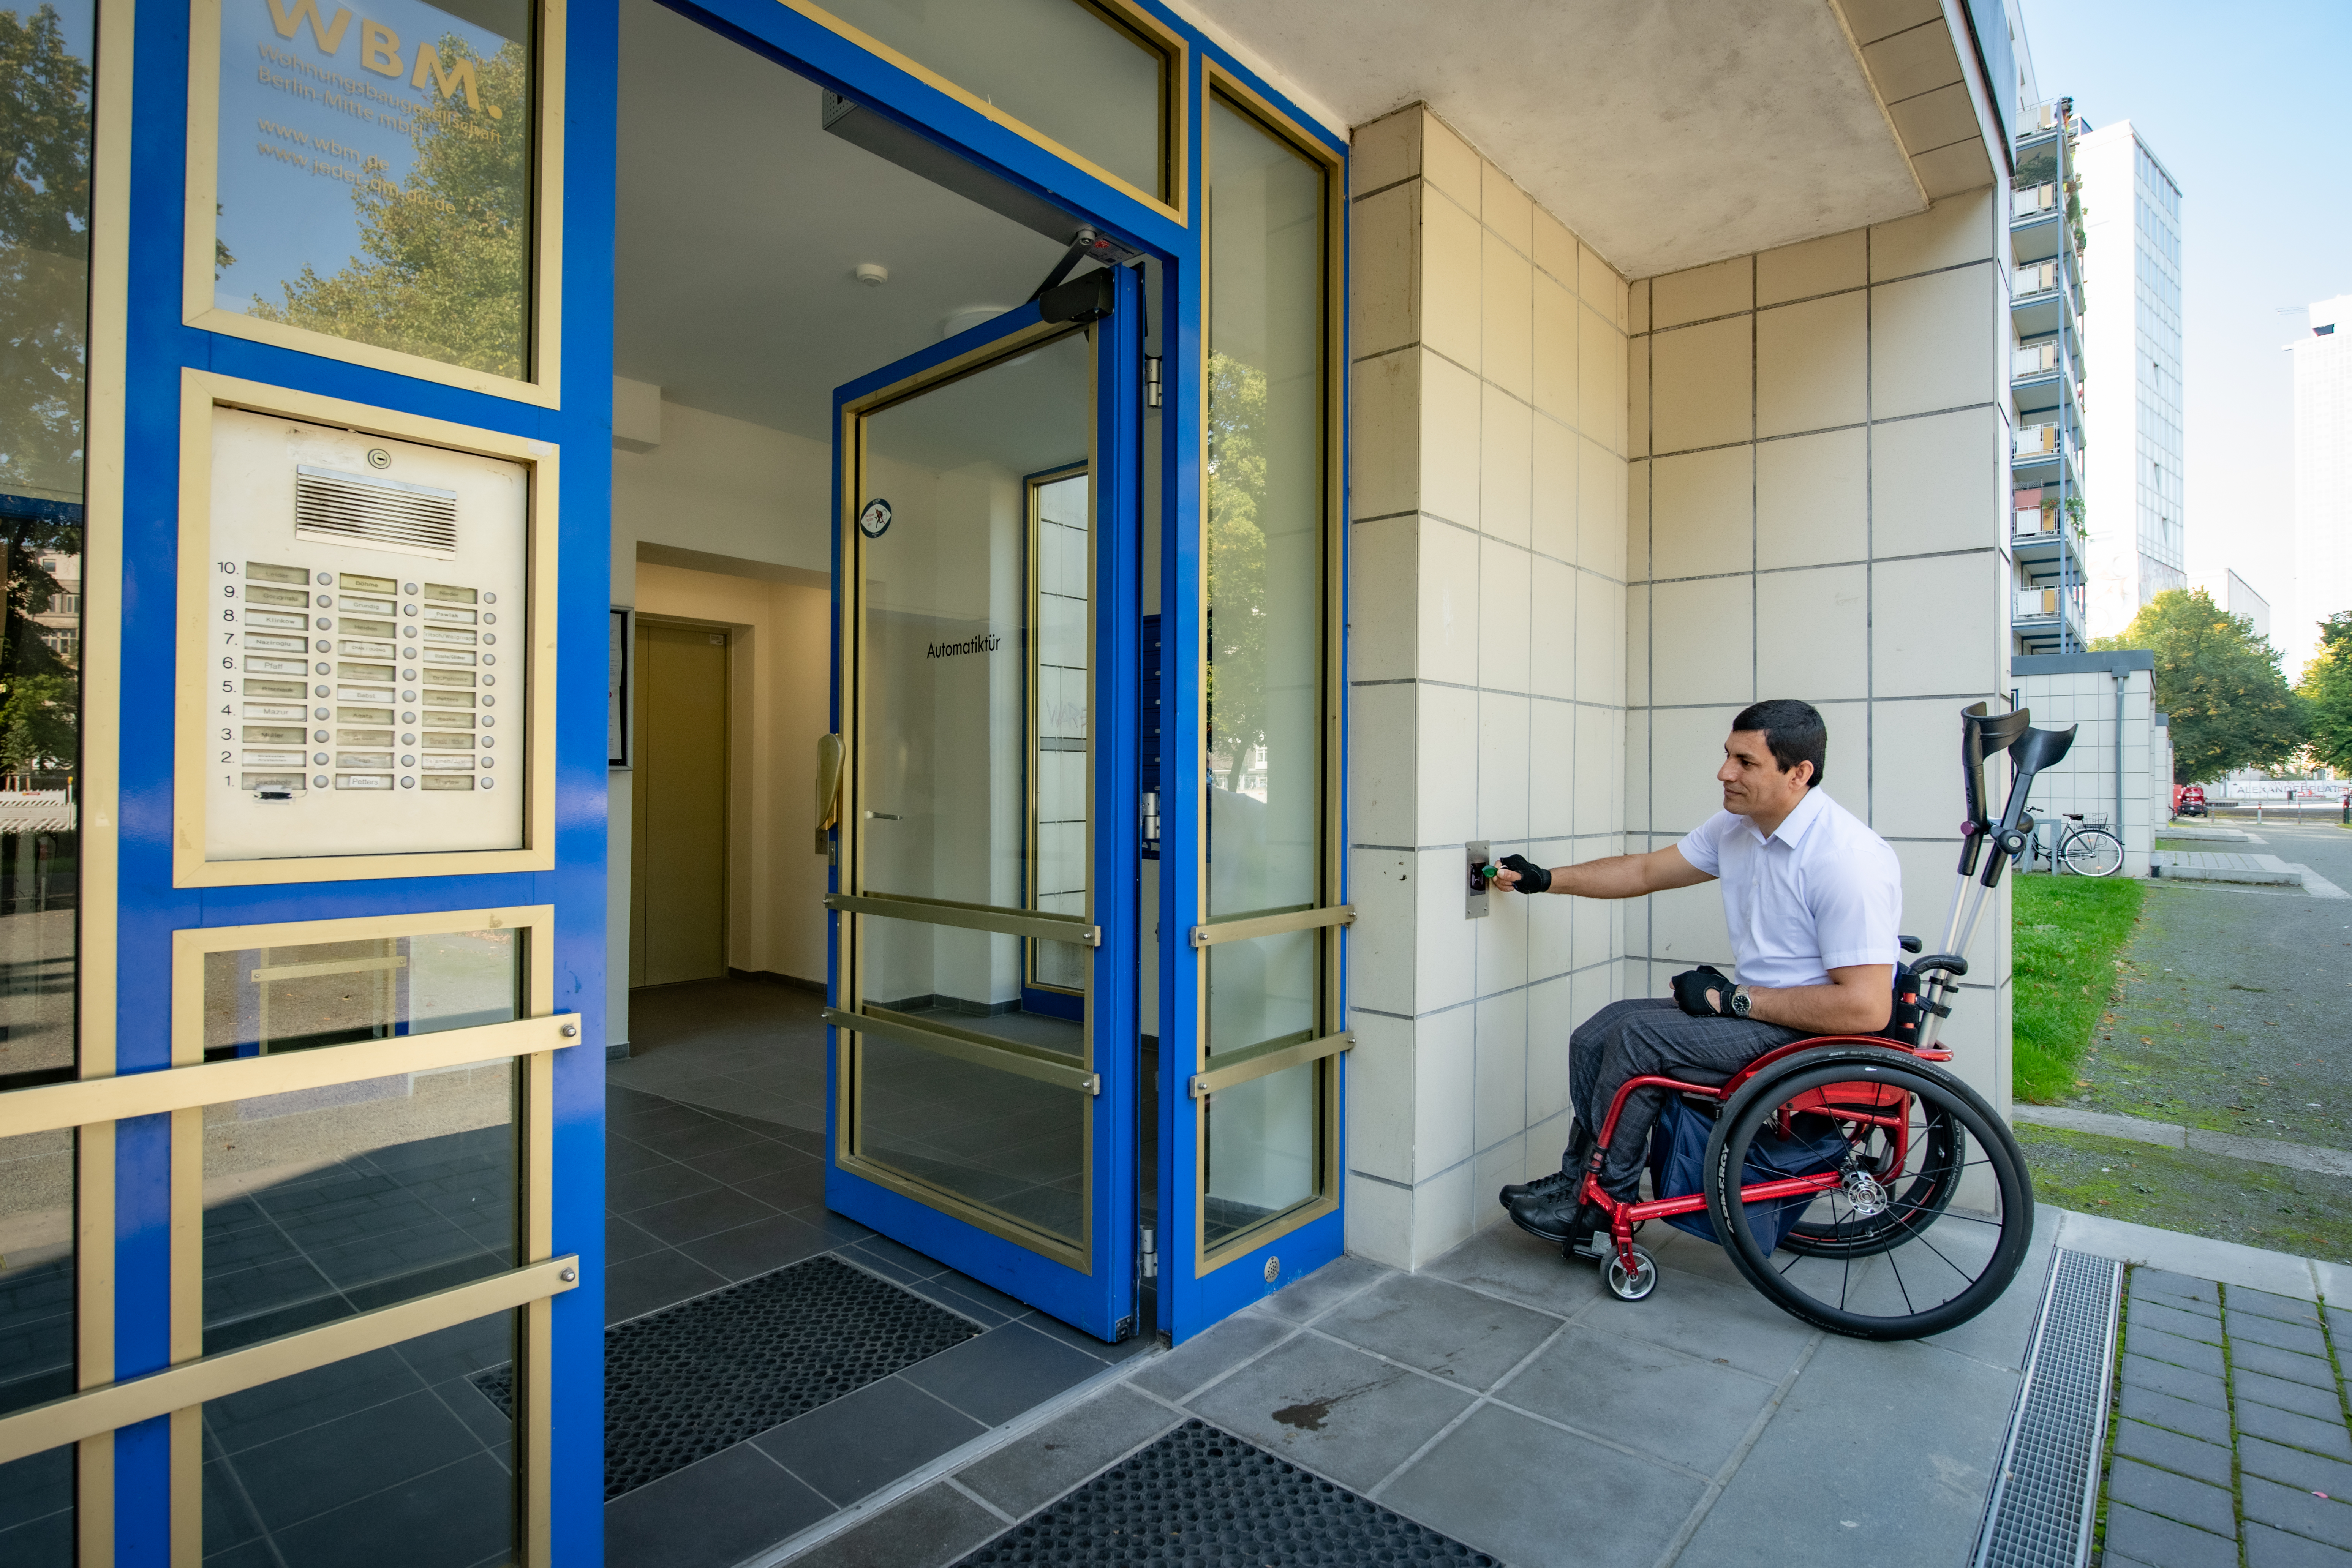 Außenansicht eines Hausengangs in der Karl-Marx-Allee nach barrierefreier Sanierung mit einem Rollstuhlfahrer